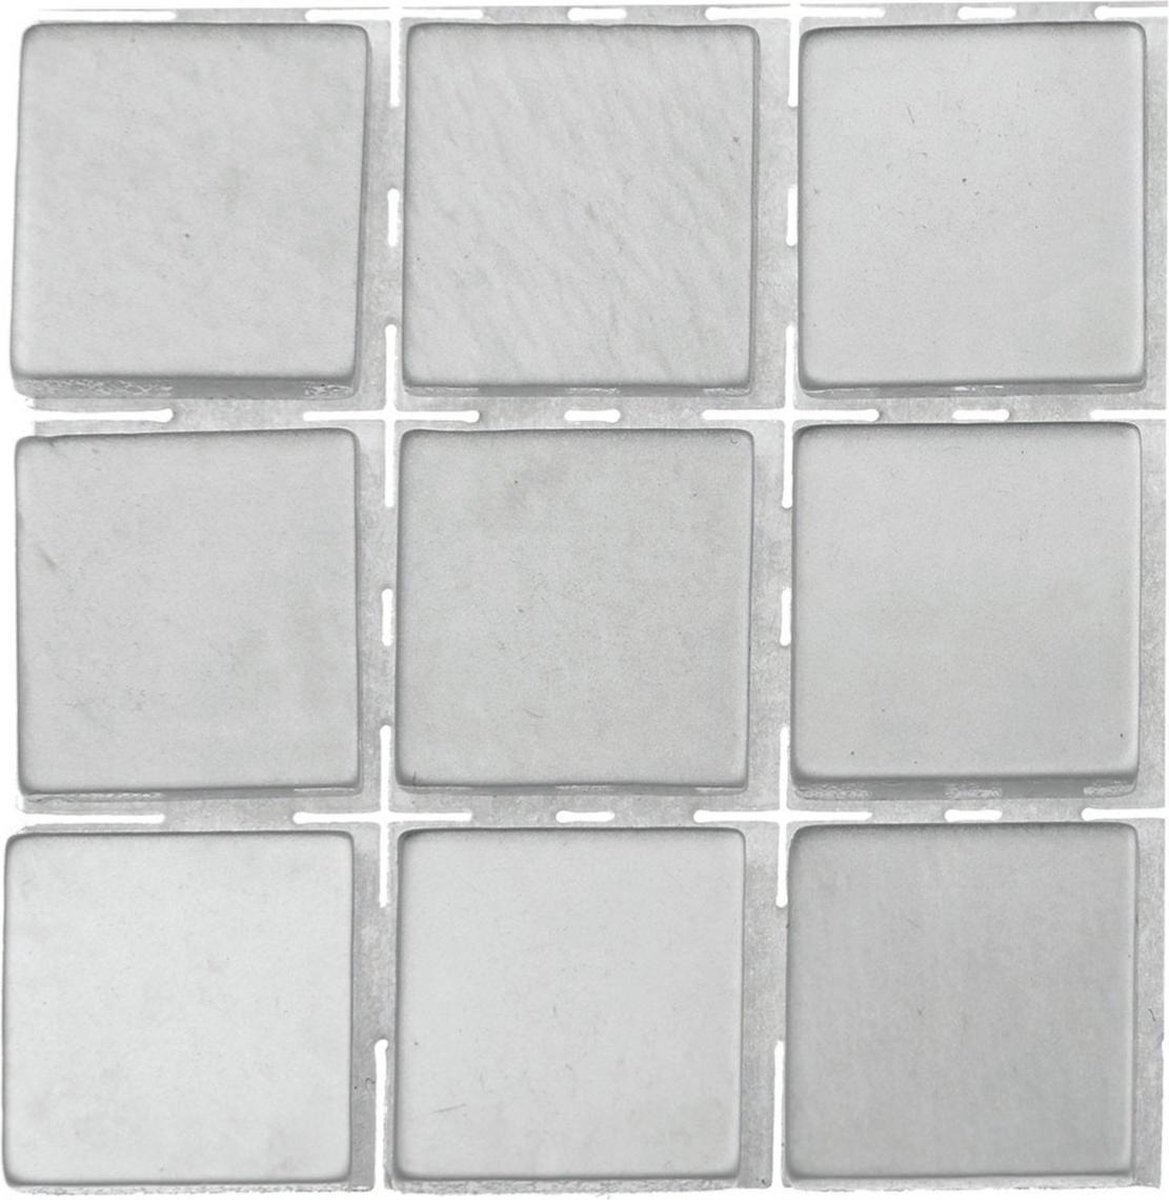 Glorex Hobby 63x stuks mozaieken maken steentjes/tegels kleur grijs met formaat 10 x 10 x 2 mm